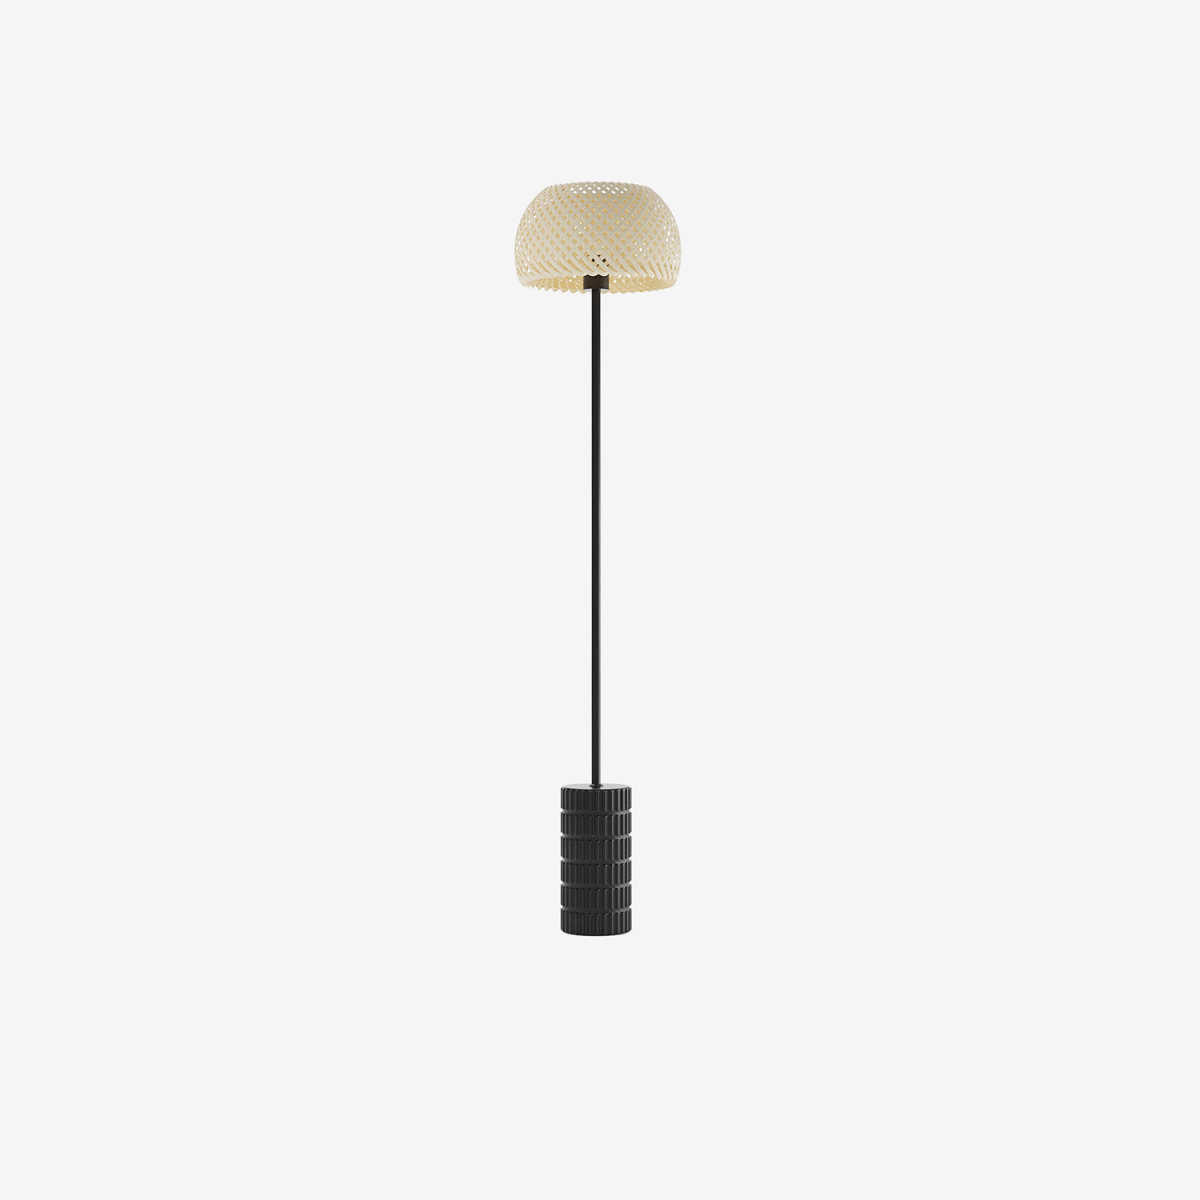 Lampe sur pied chambre métal et bambou - Potiron Paris, le luminaire design de la décoration d'intérieur chic et moderne